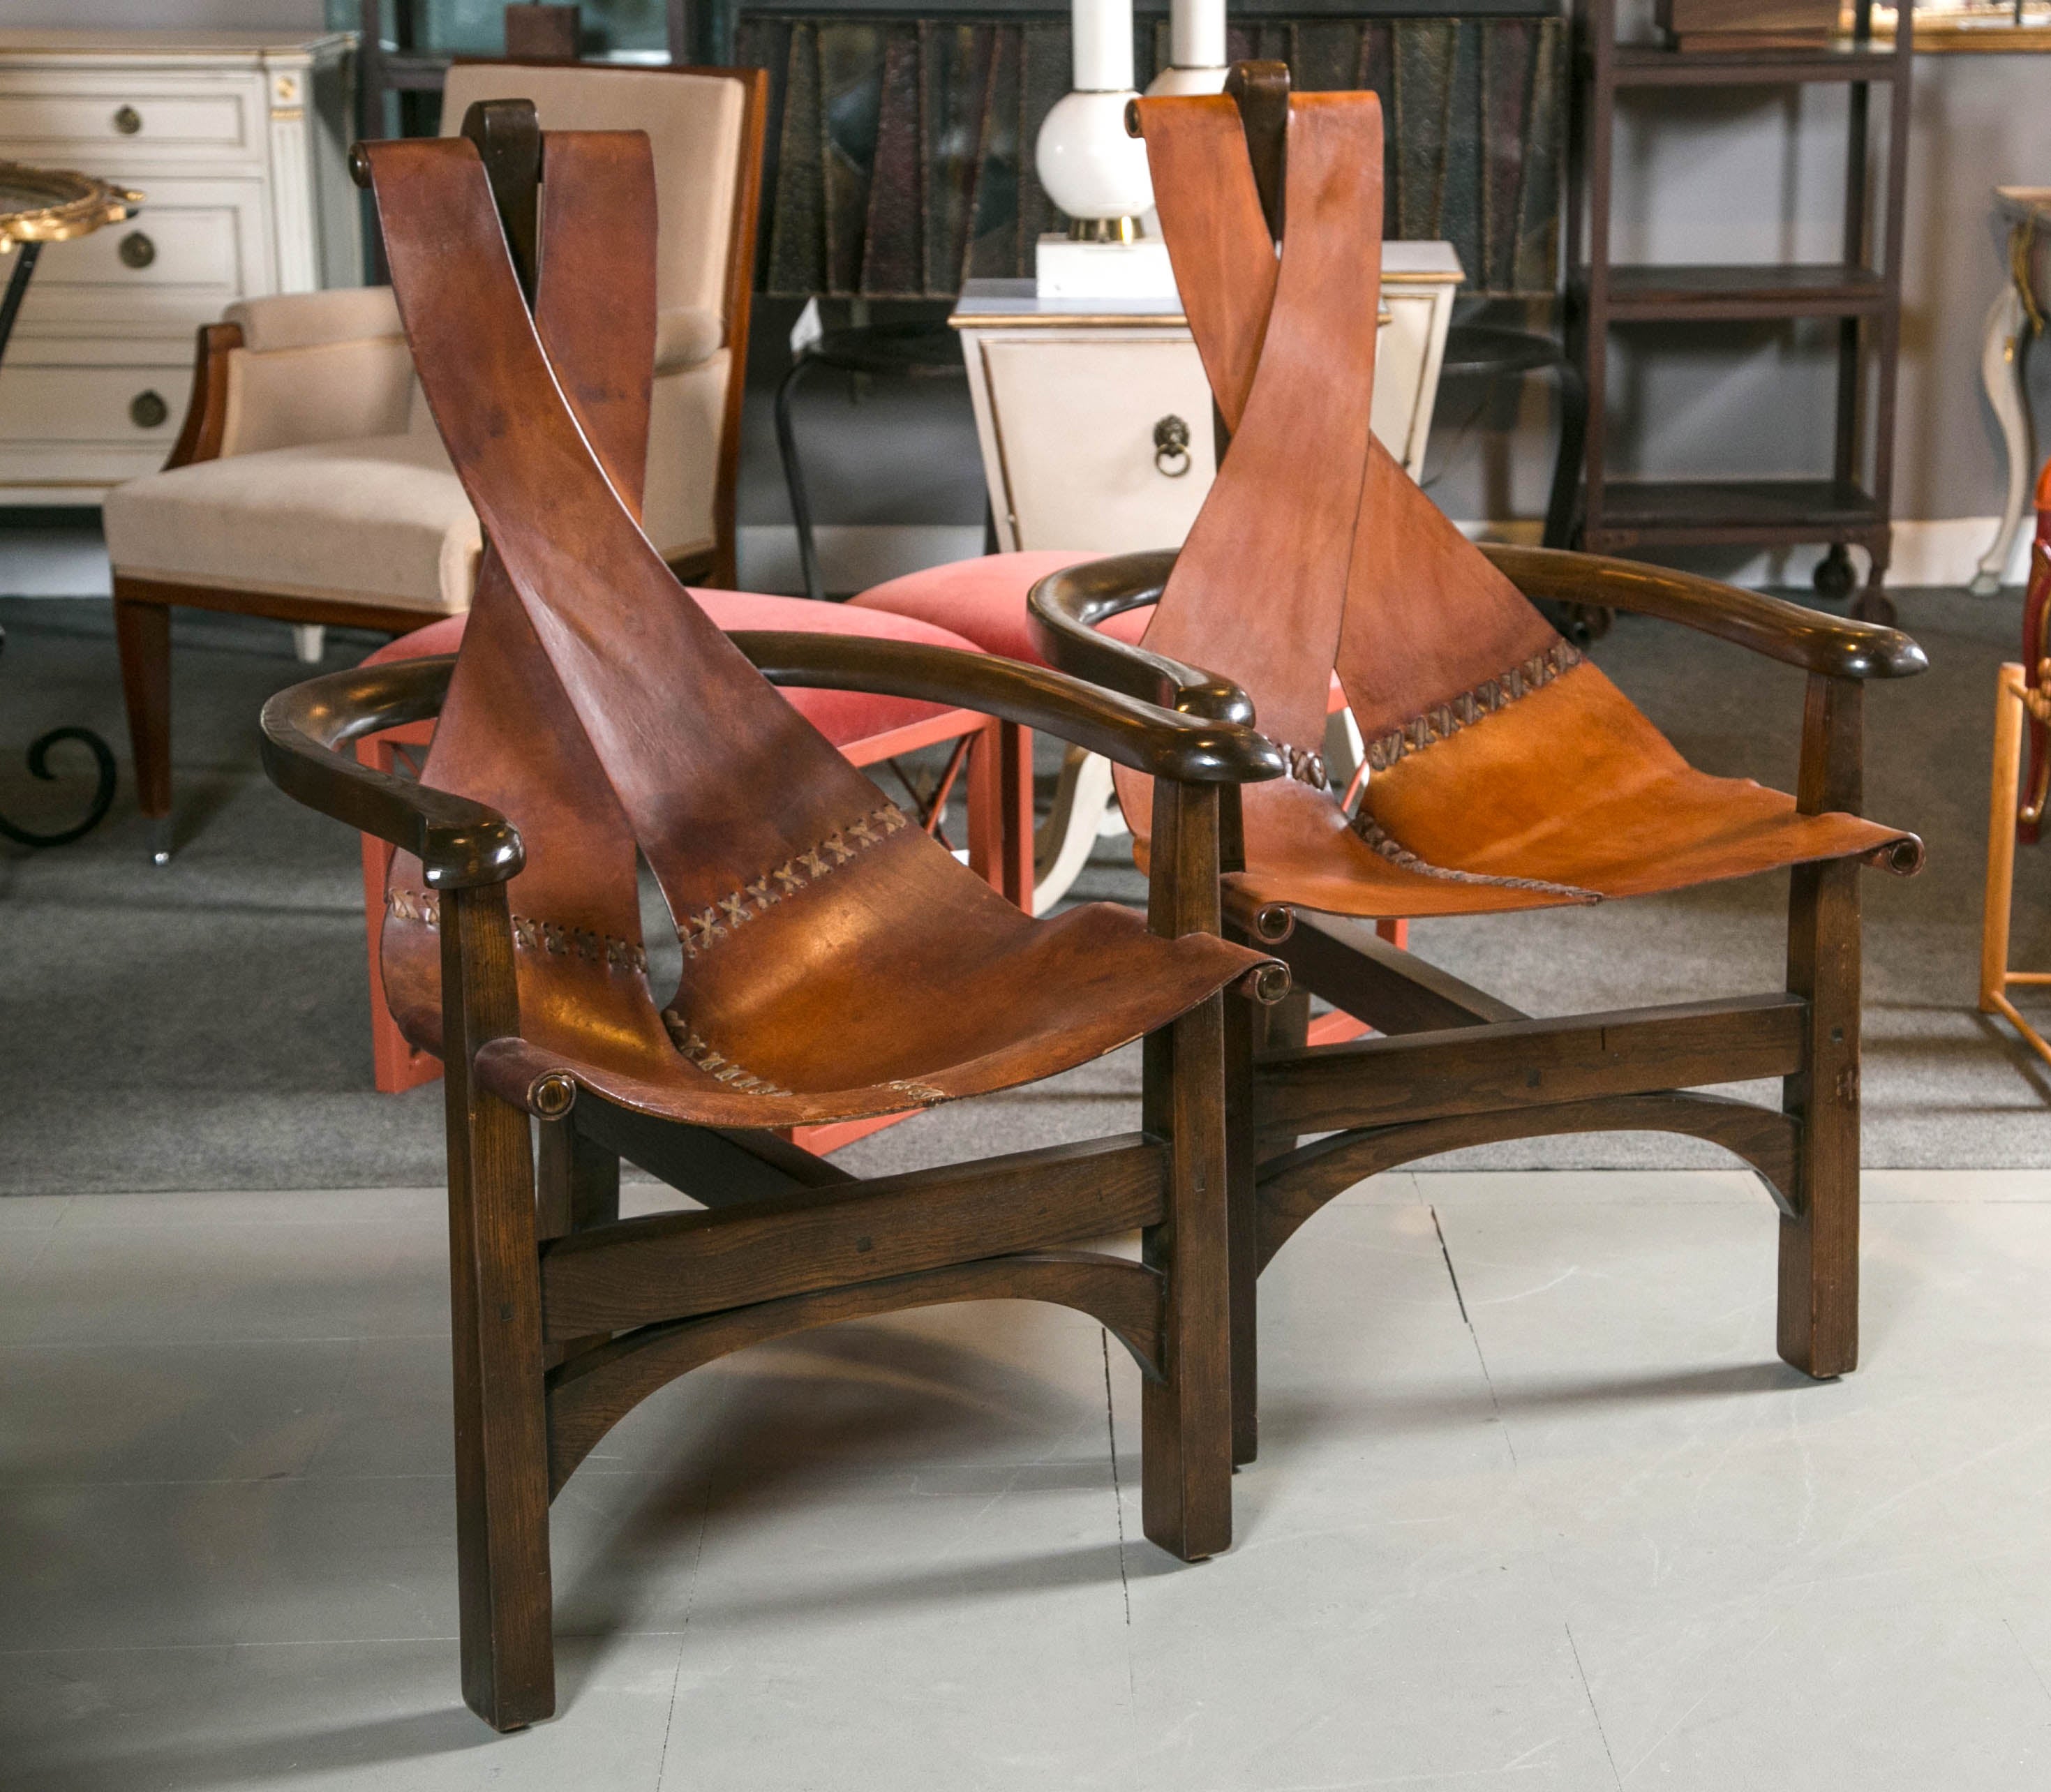 Pair of Midcentury Brazilian Horseshoe Chairs